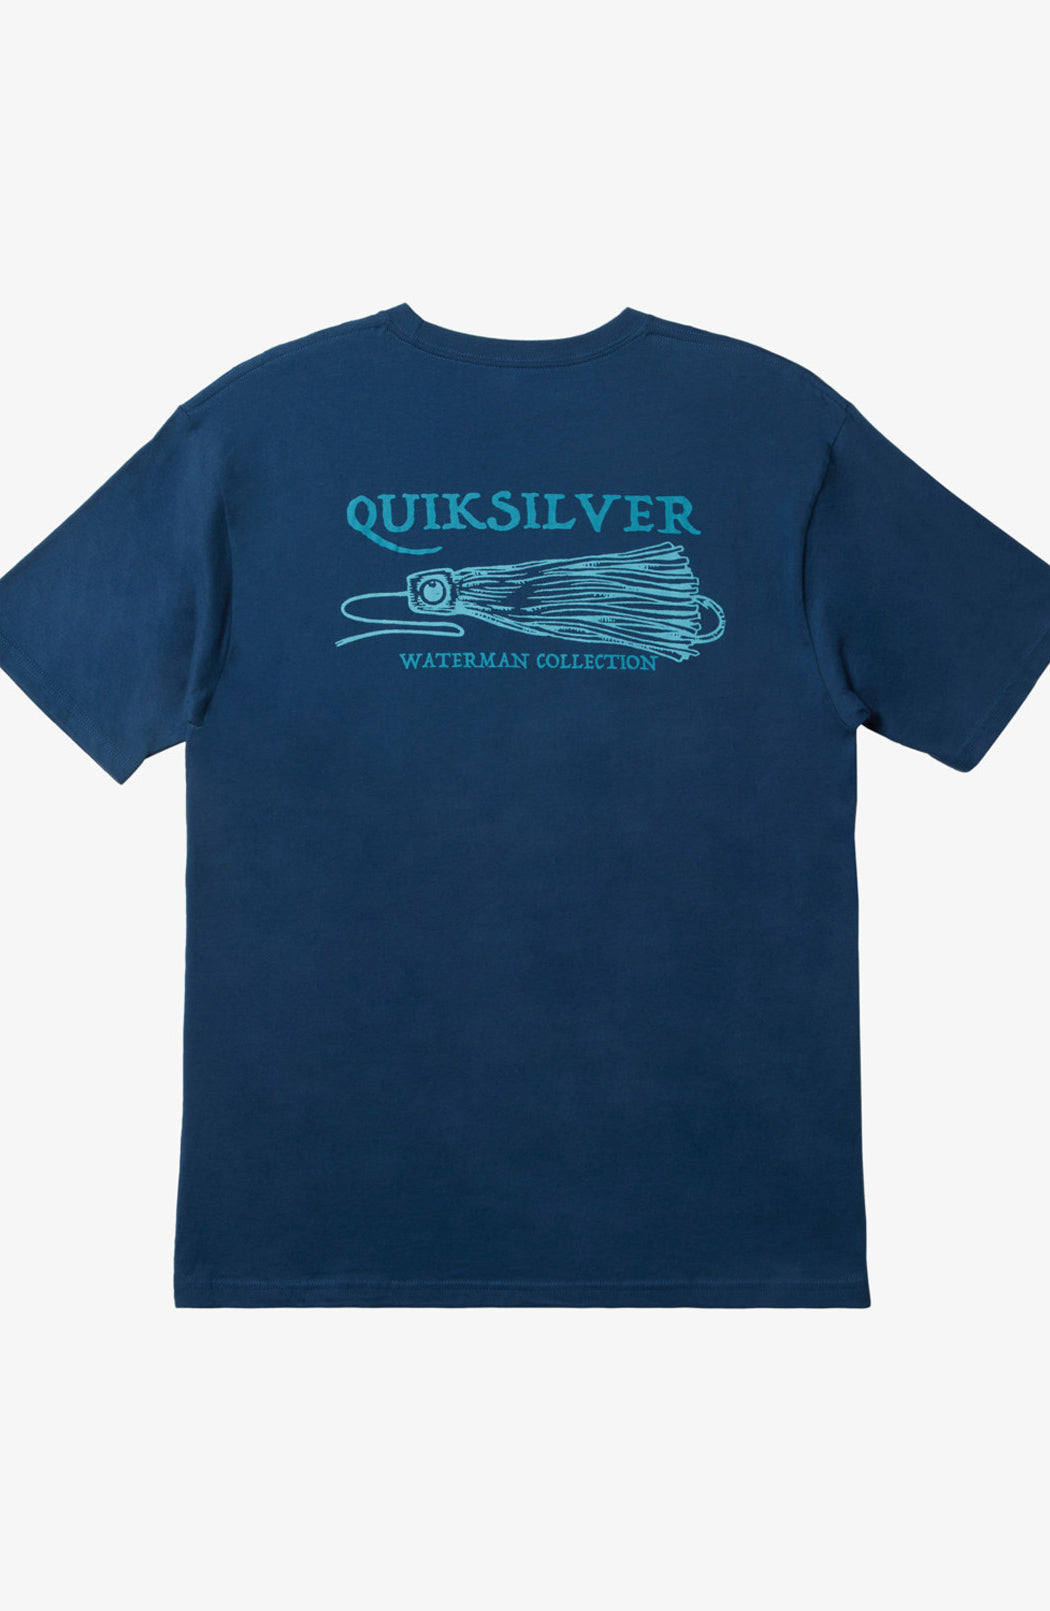 Quiksilver: Waterman Get Jiggy T-Shirt